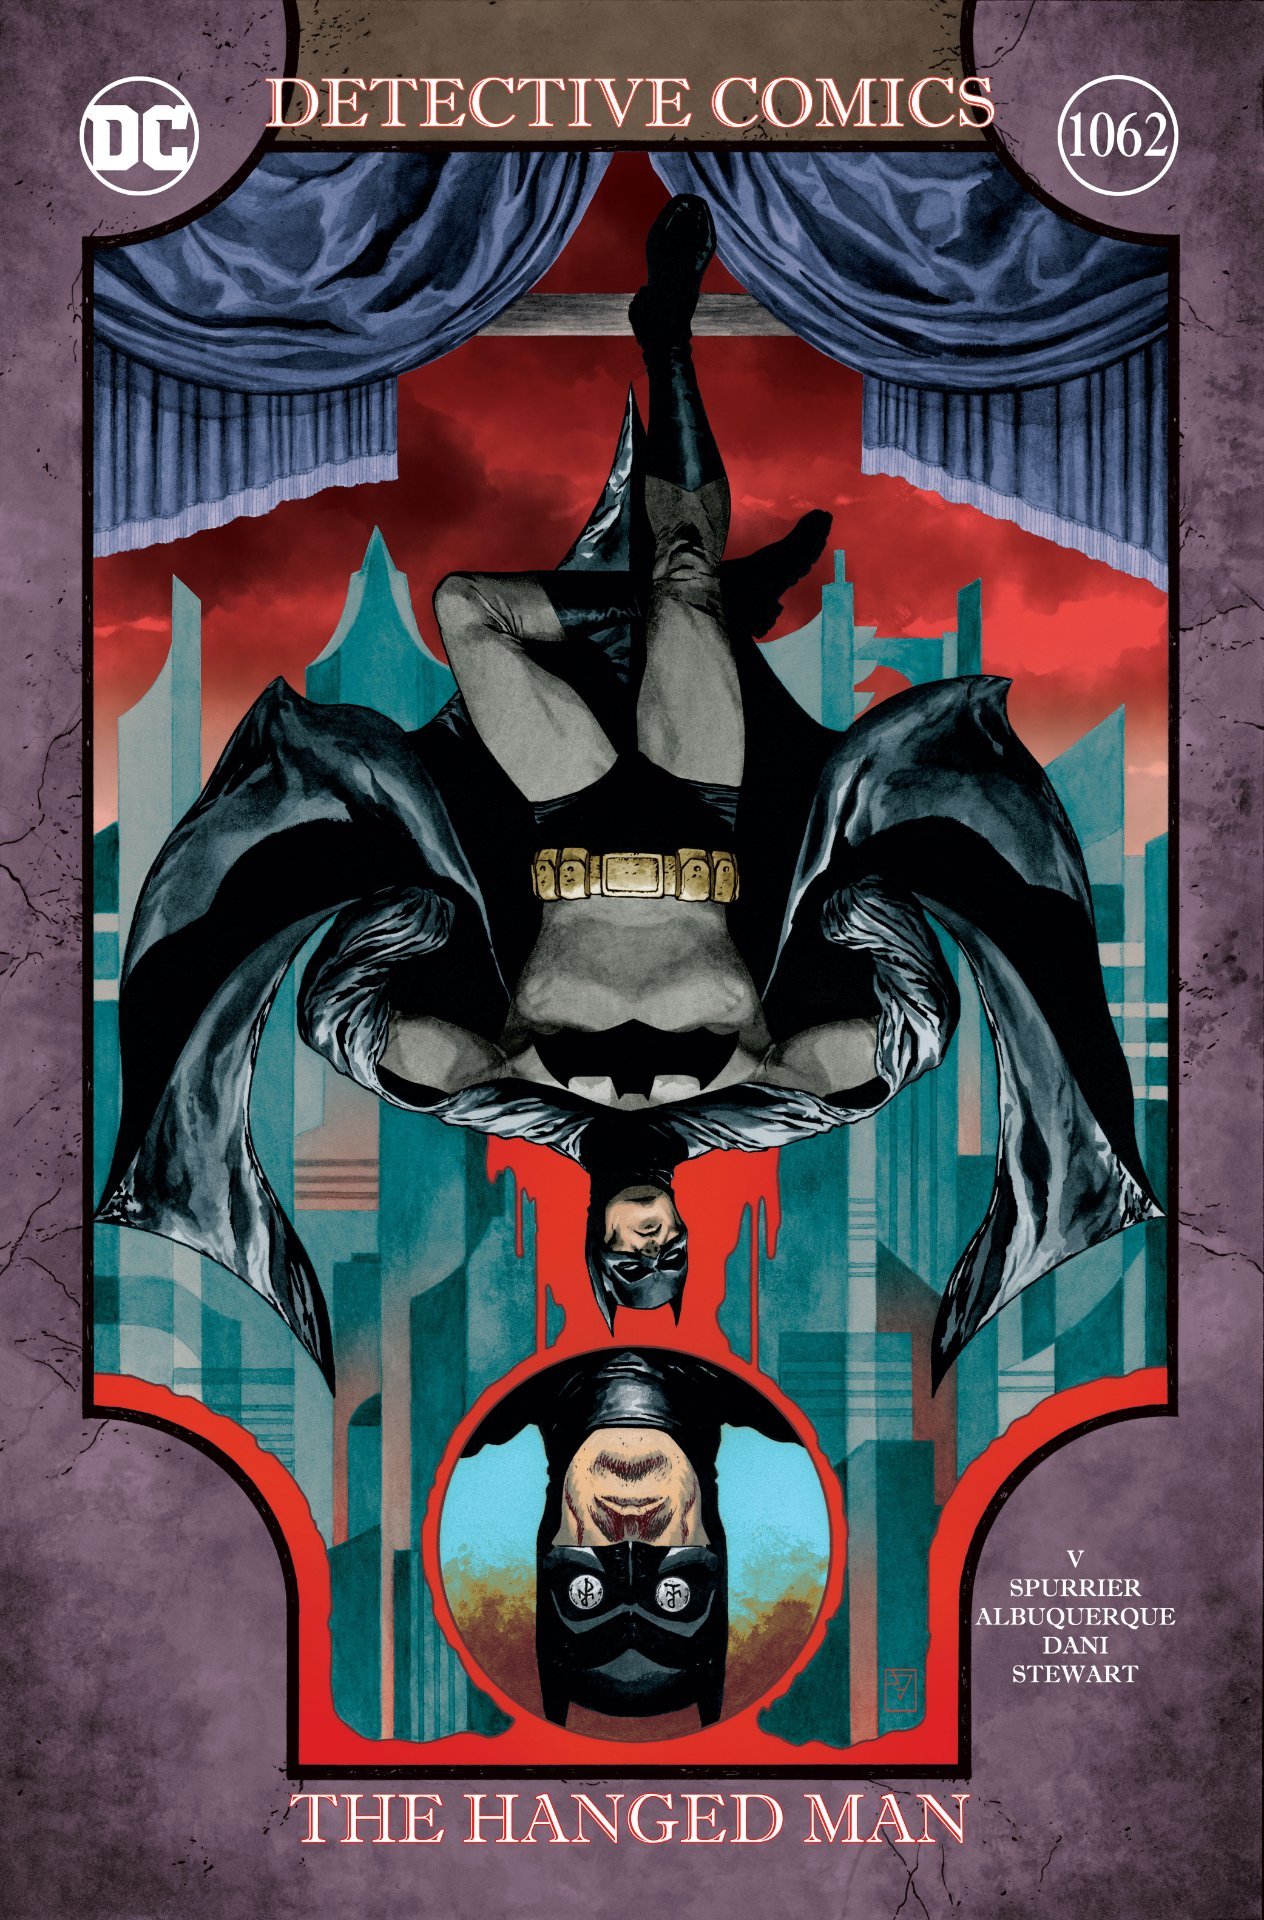 Cover di Detective Comics 1062 di Evan Cagle, con l'inizio di Gotham Nocturne